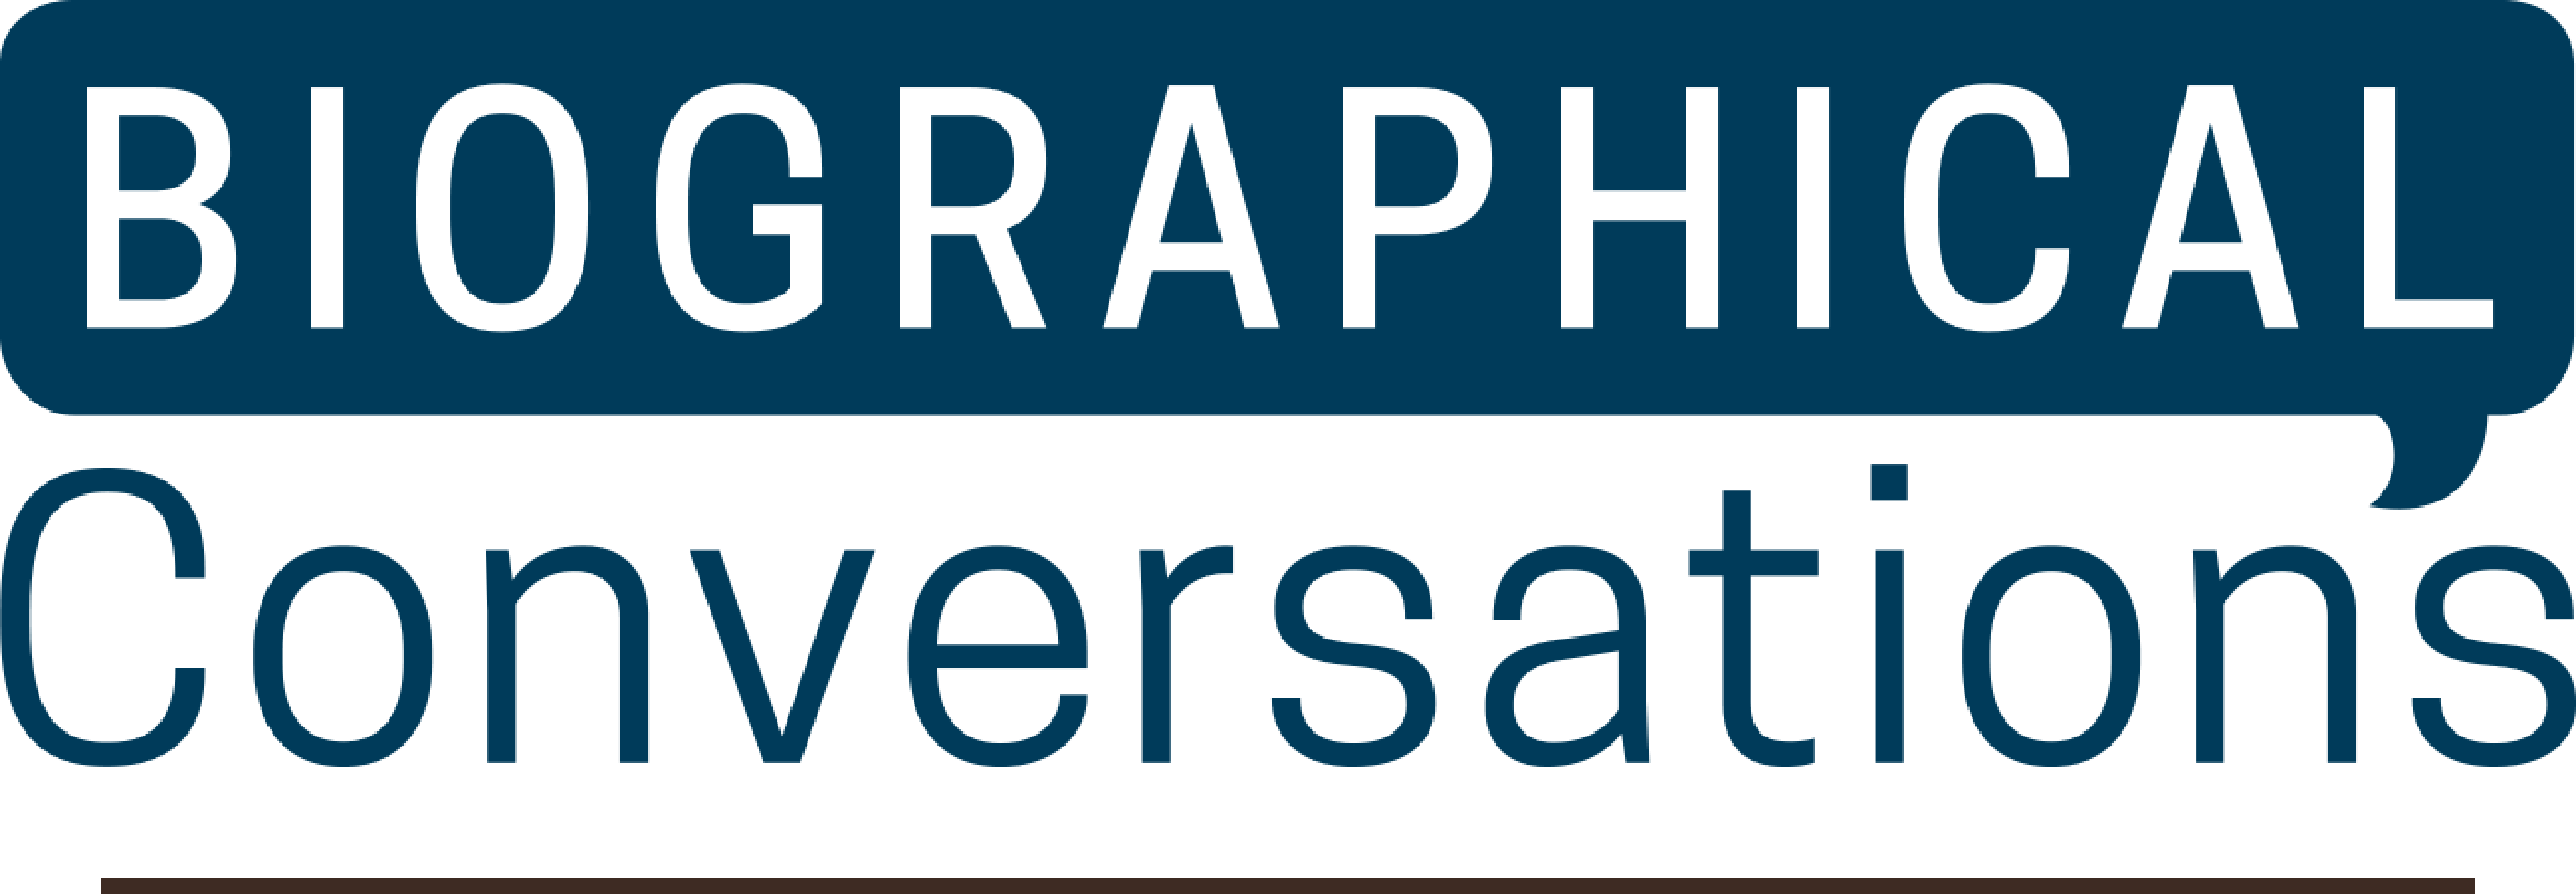 Biographical Conversation Logo